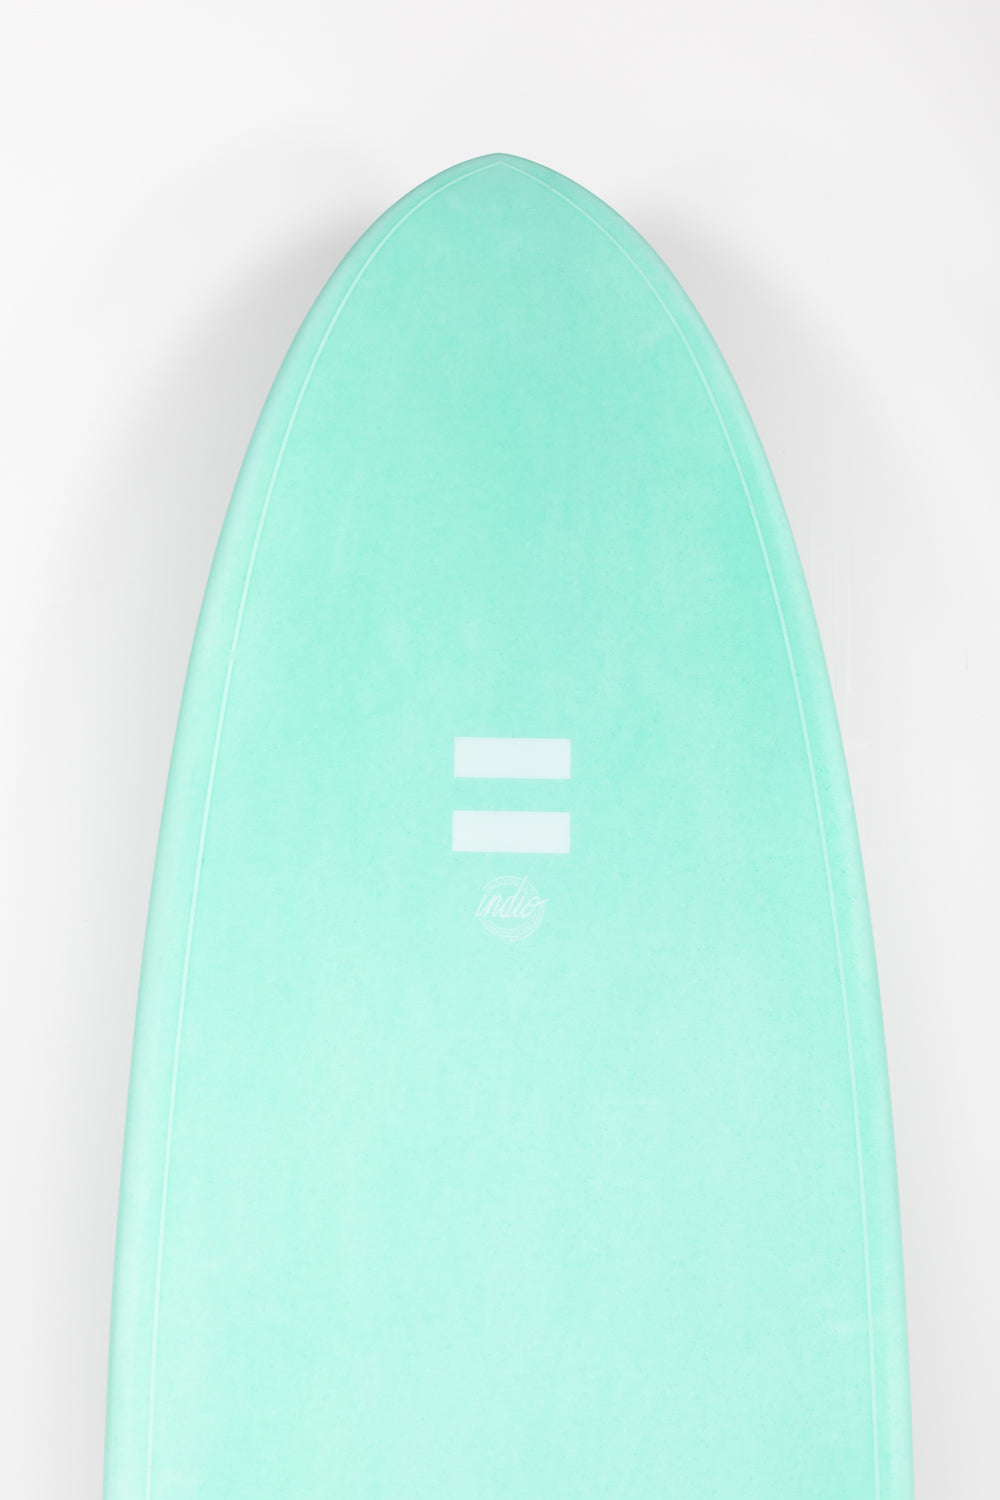 
                  
                    Pukas Surf Shop - Indio Endurance - THE EGG Aqua Mint - 6´8 x 21 1/2 x 2 3/4 - 46L
                  
                